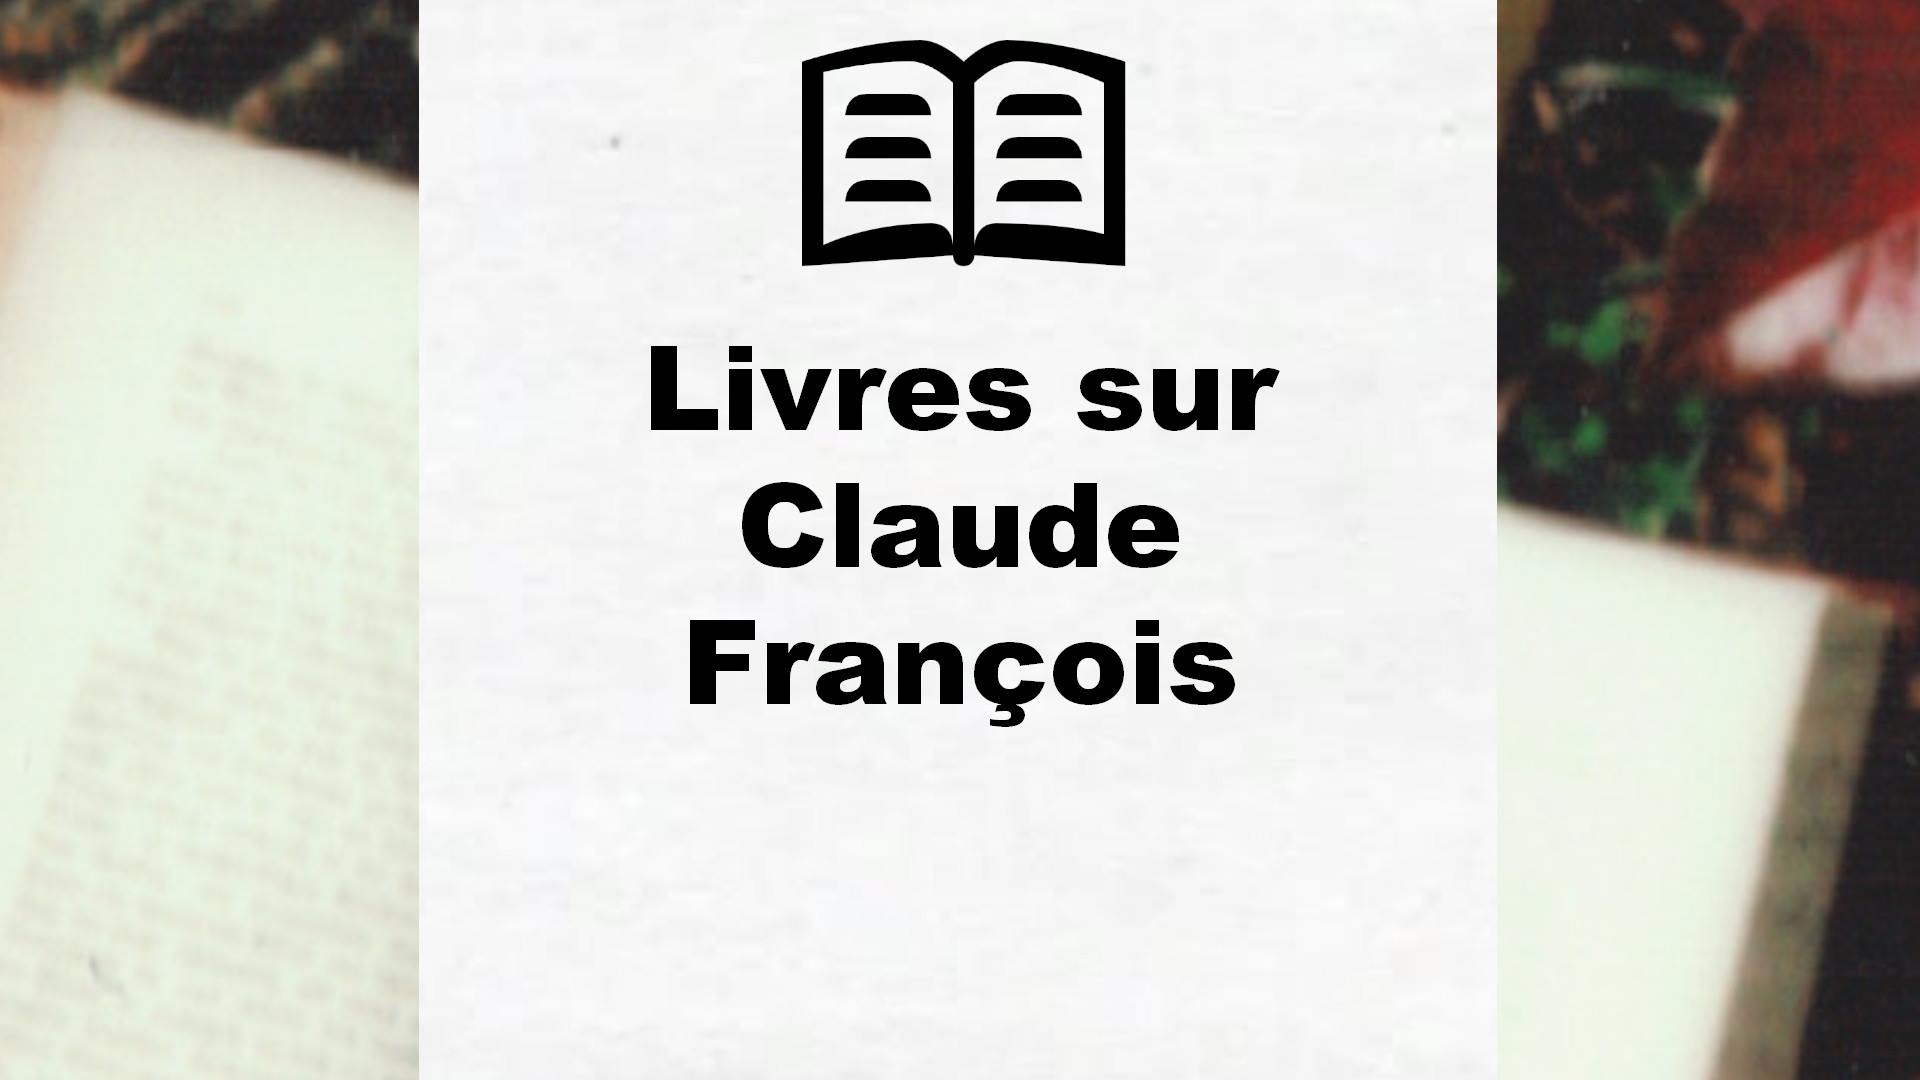 Livres sur Claude François